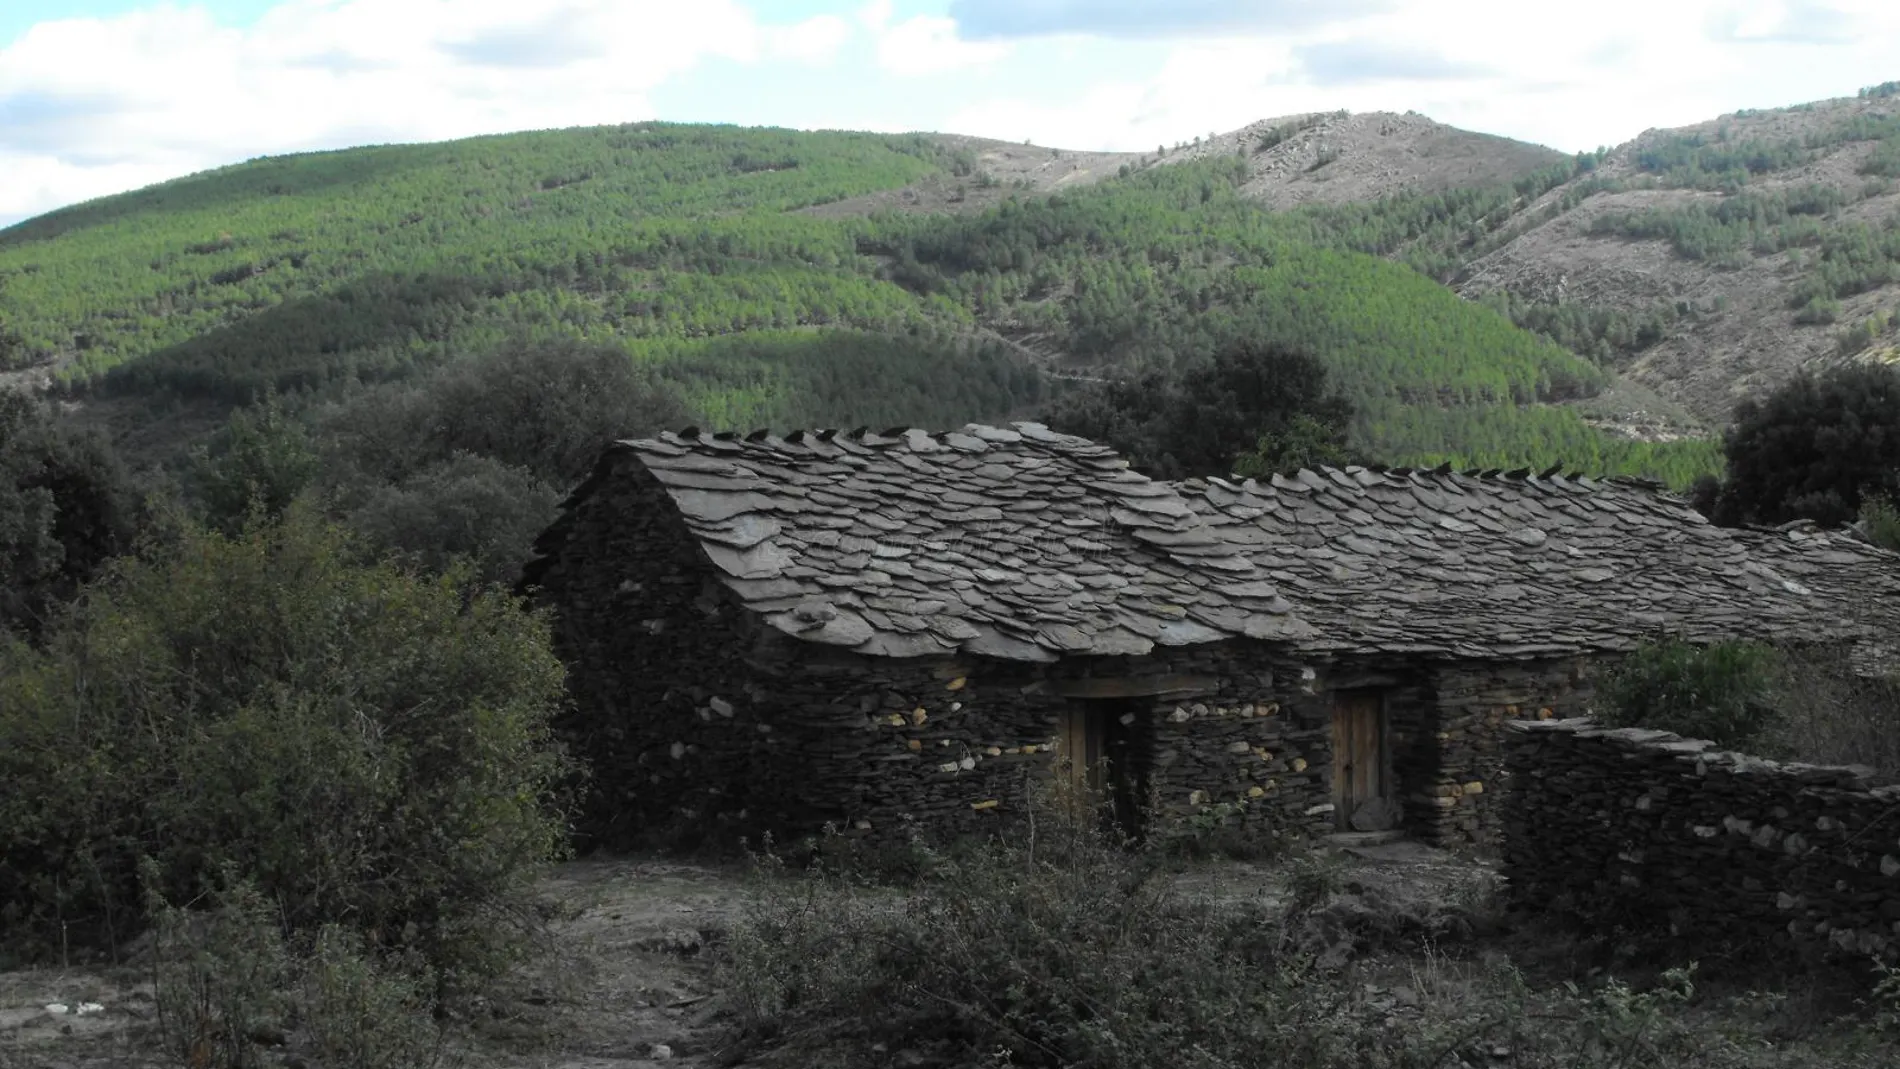 Los pueblos negros de Guadalajara reciben ese nombre debido a las tejas que se utilizan en su construcción.